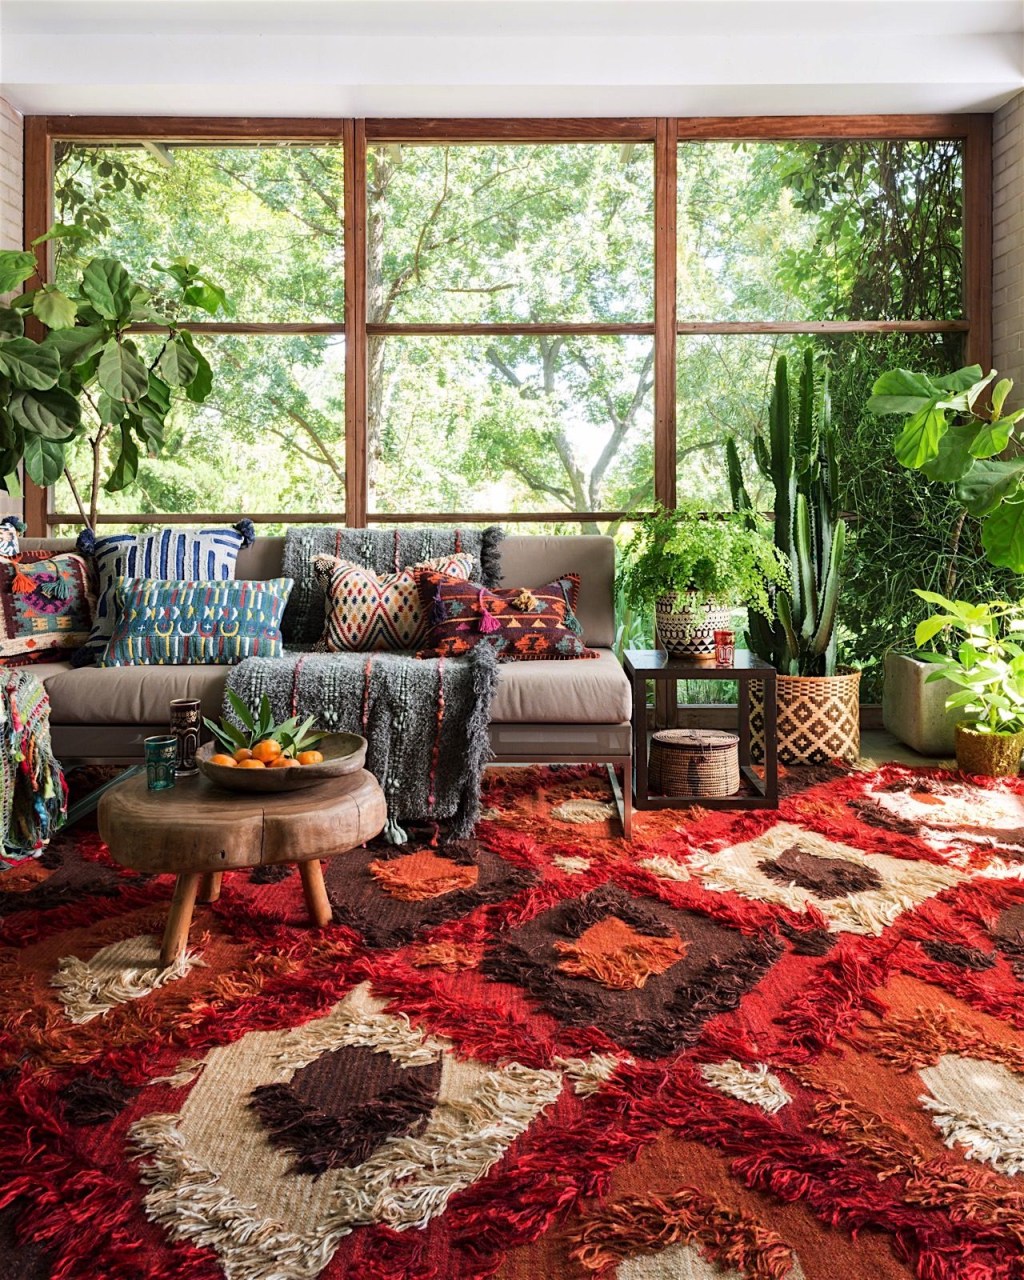 Decoraçnao estilo boho com tapete vermelho estamapado, sofá cinza com almofadas estampadas coloridas e muitas plantas